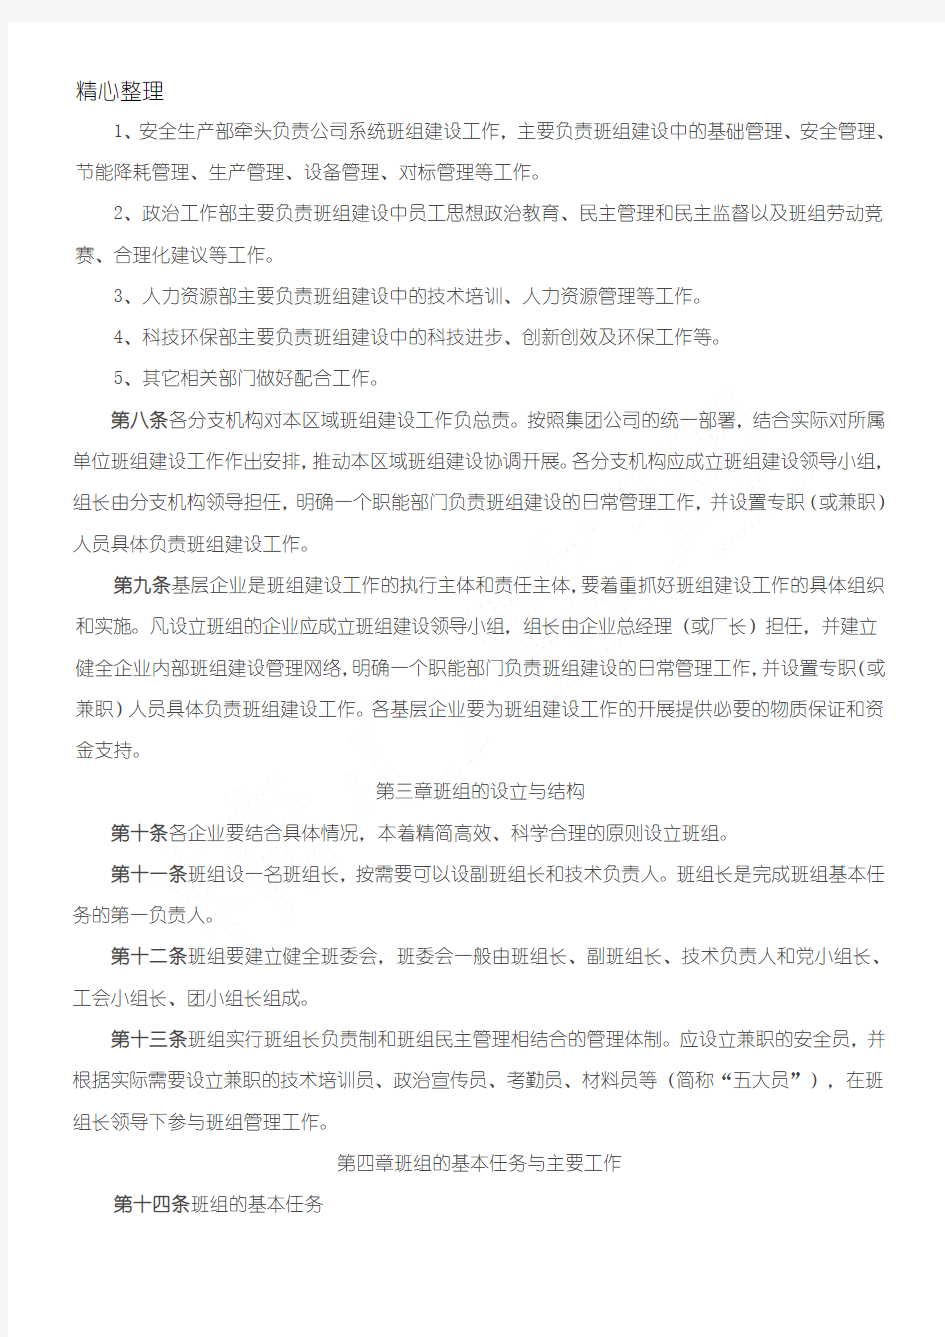 中国华电集团公司班组建设管理规定